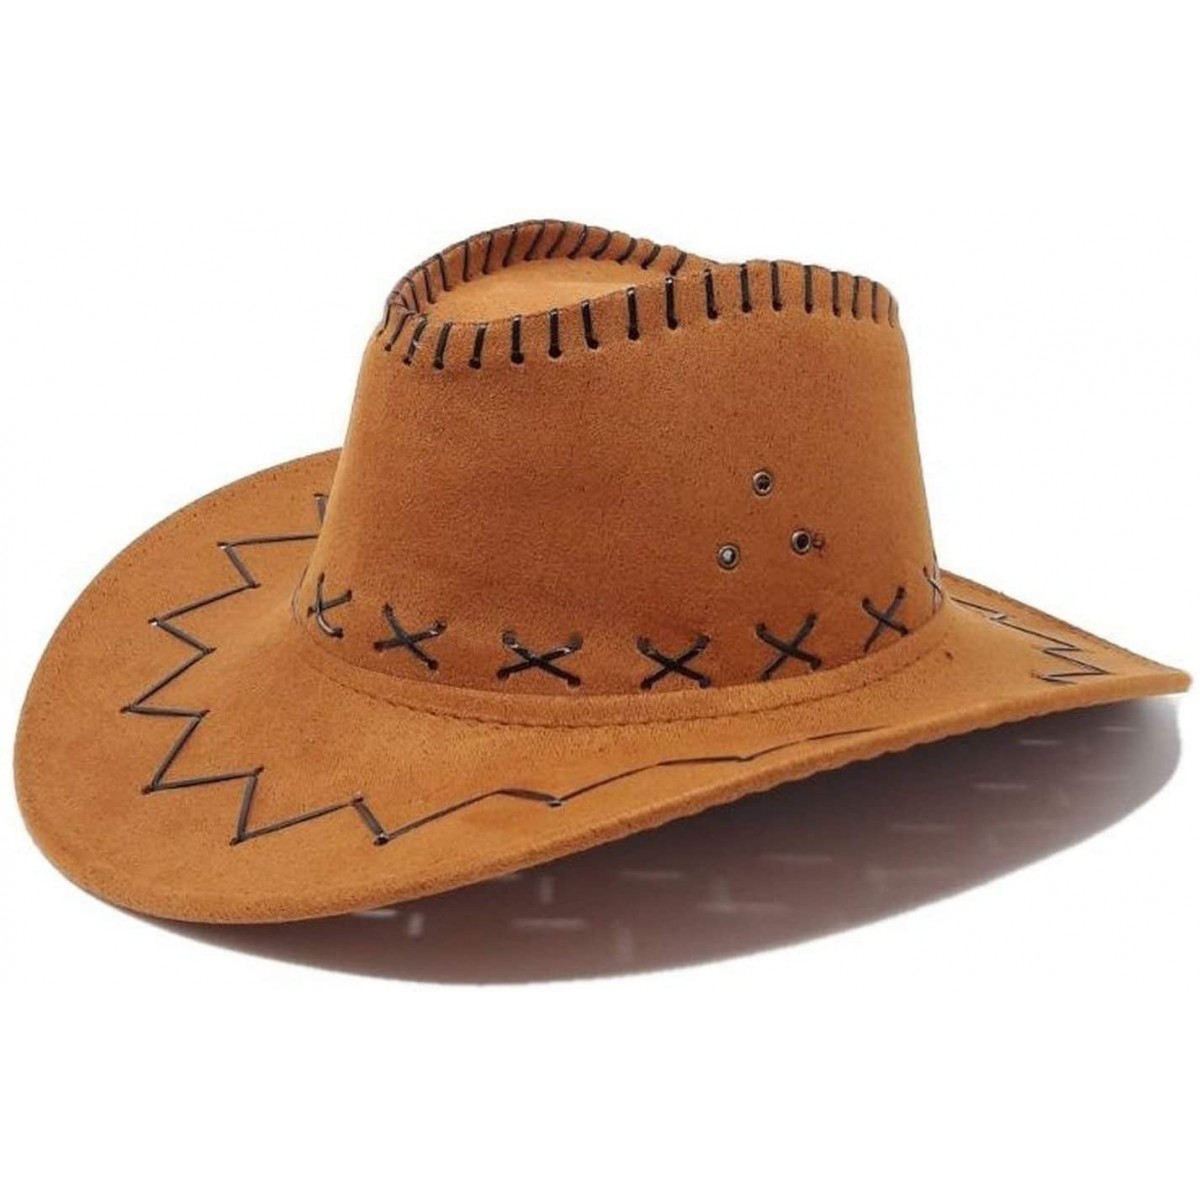 Cowgirl Cowboy Western AUSTRALIAN Aussie Stile Cappello Cespuglio in pelle scamosciata cammello beige 